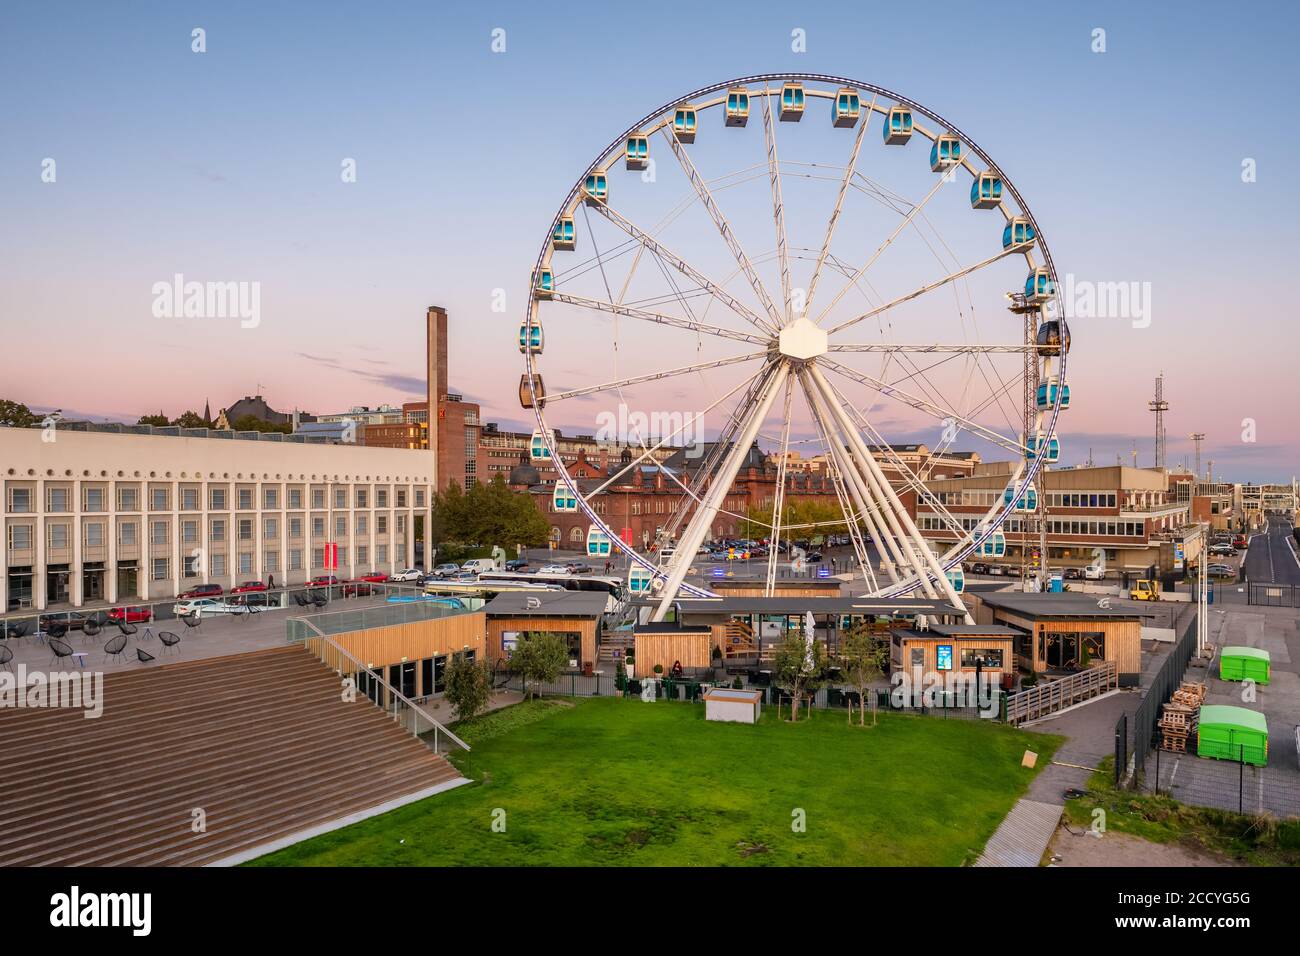 Observation wheel in Helsinki, Finland. Stock Photo